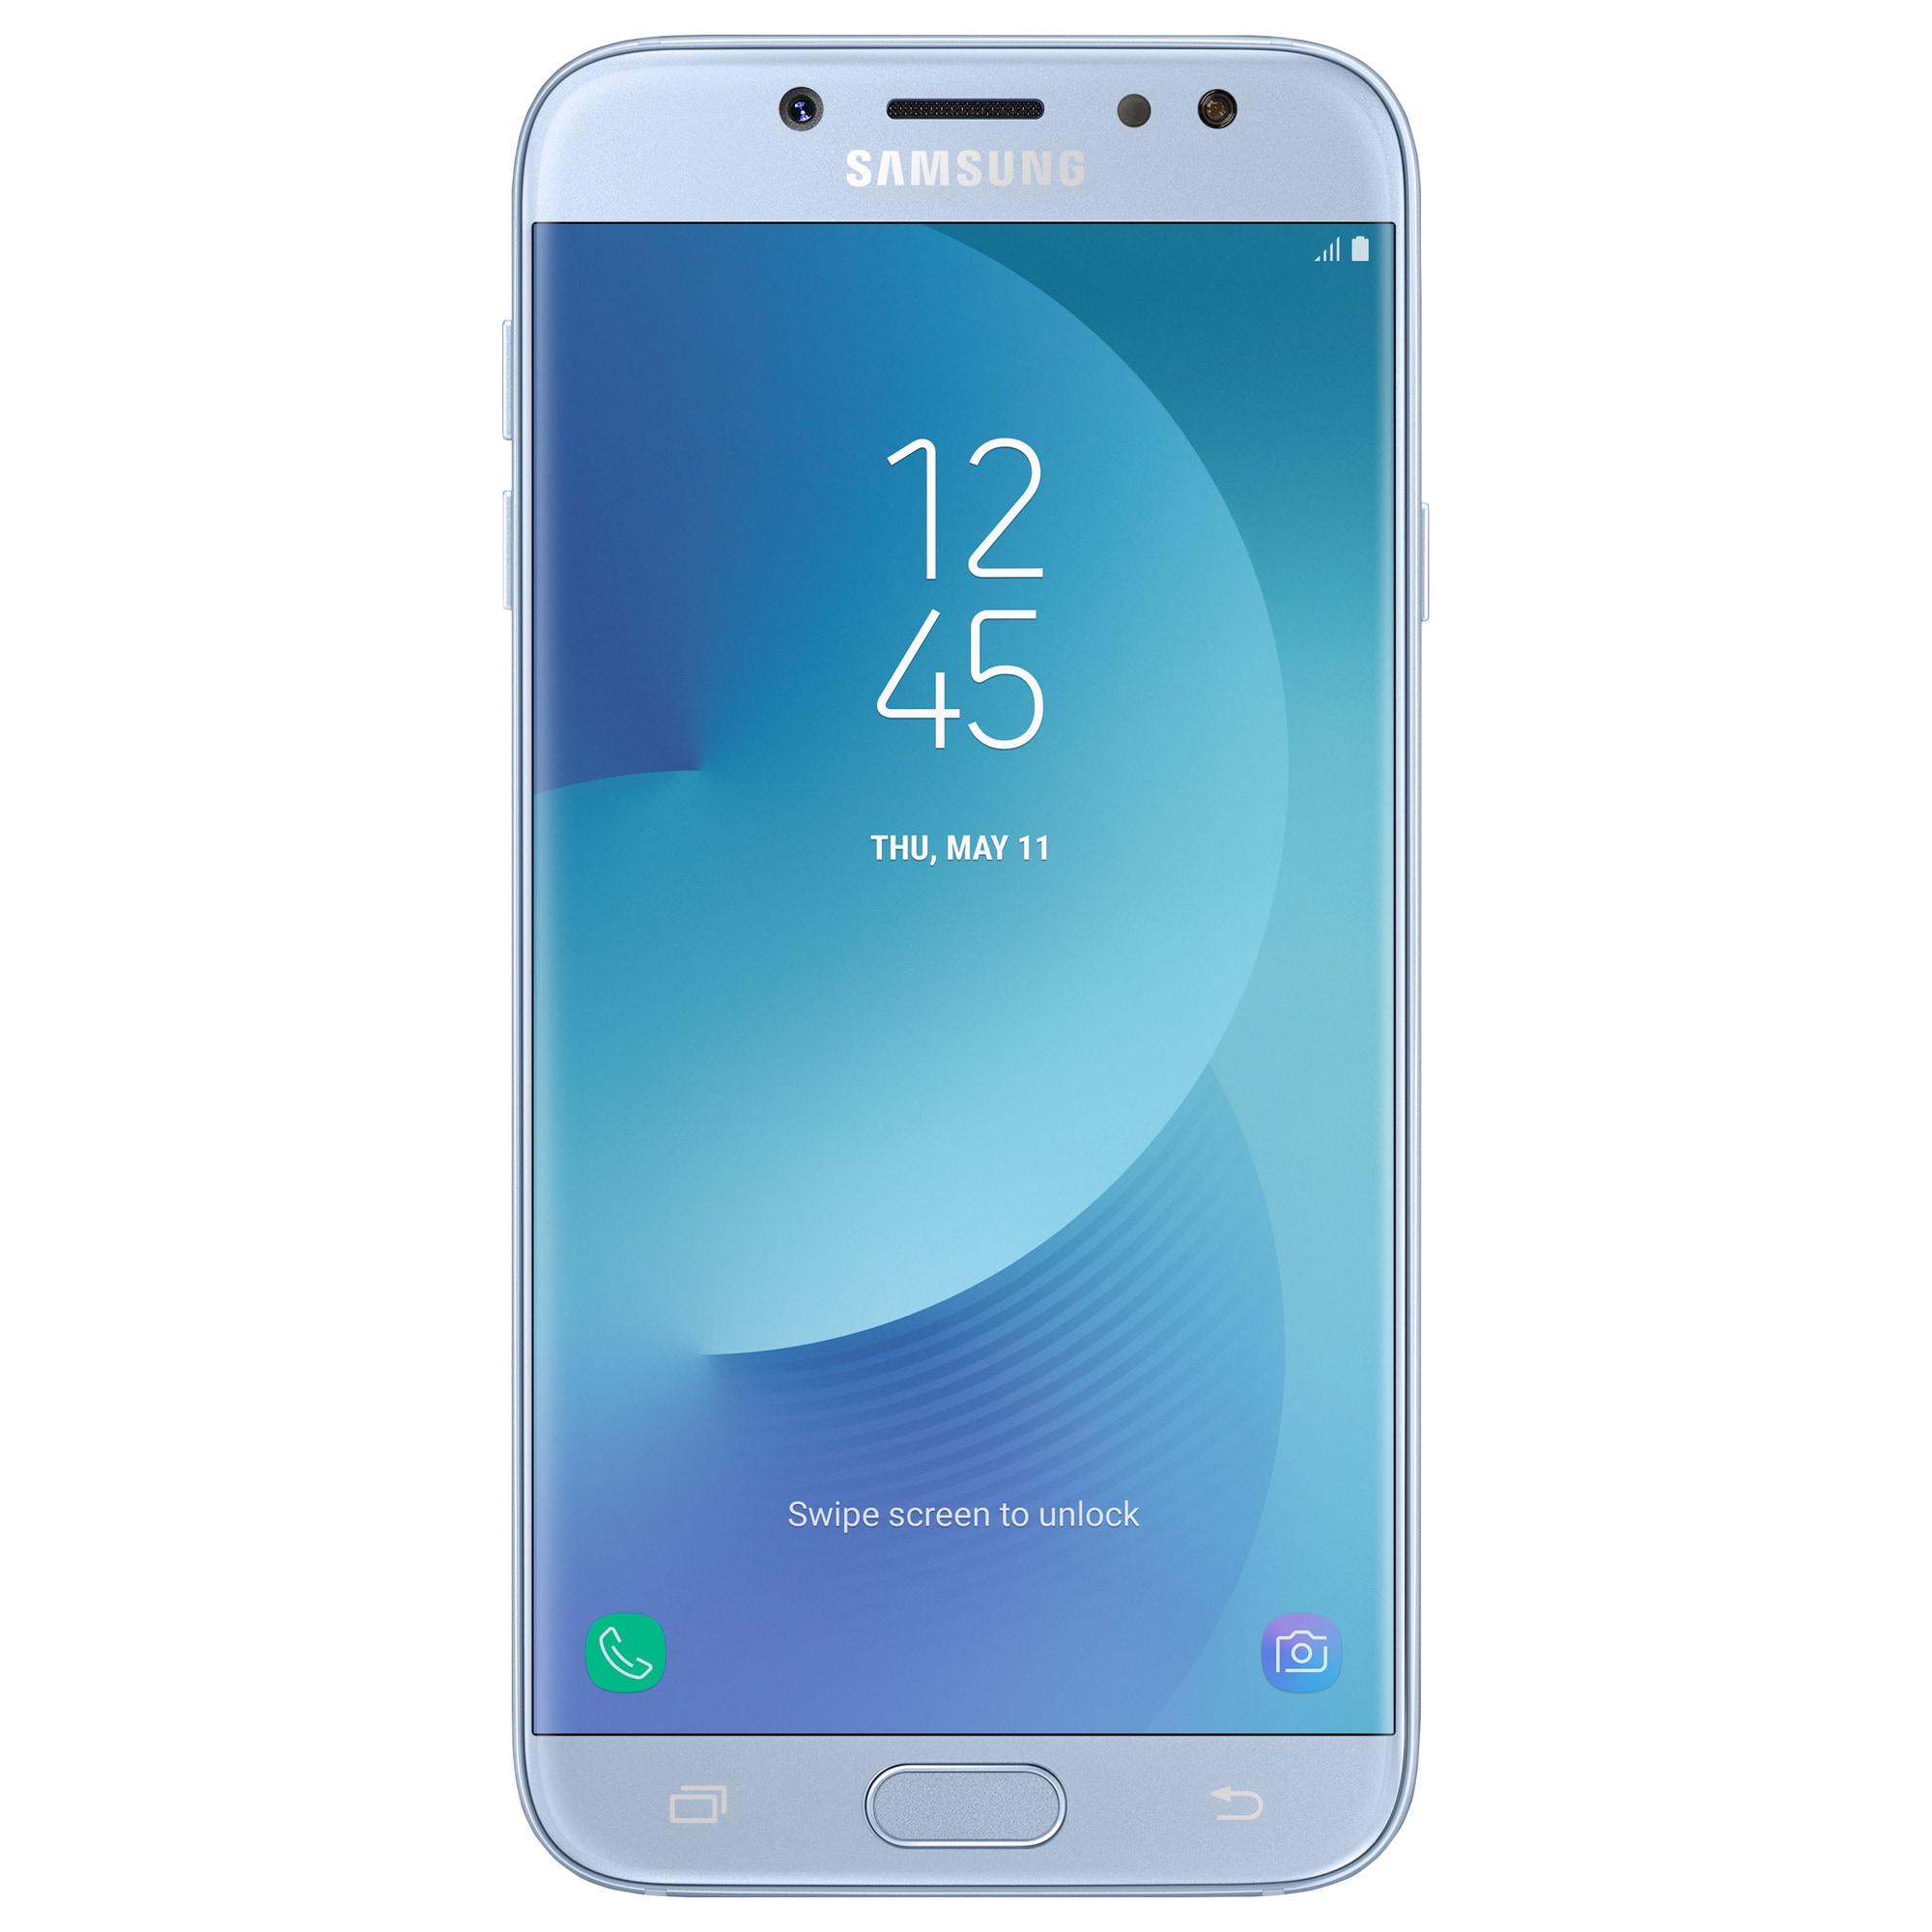 Samsung Galaxy J7 2017 smarttelefon (sølvblå) - Elkjøp